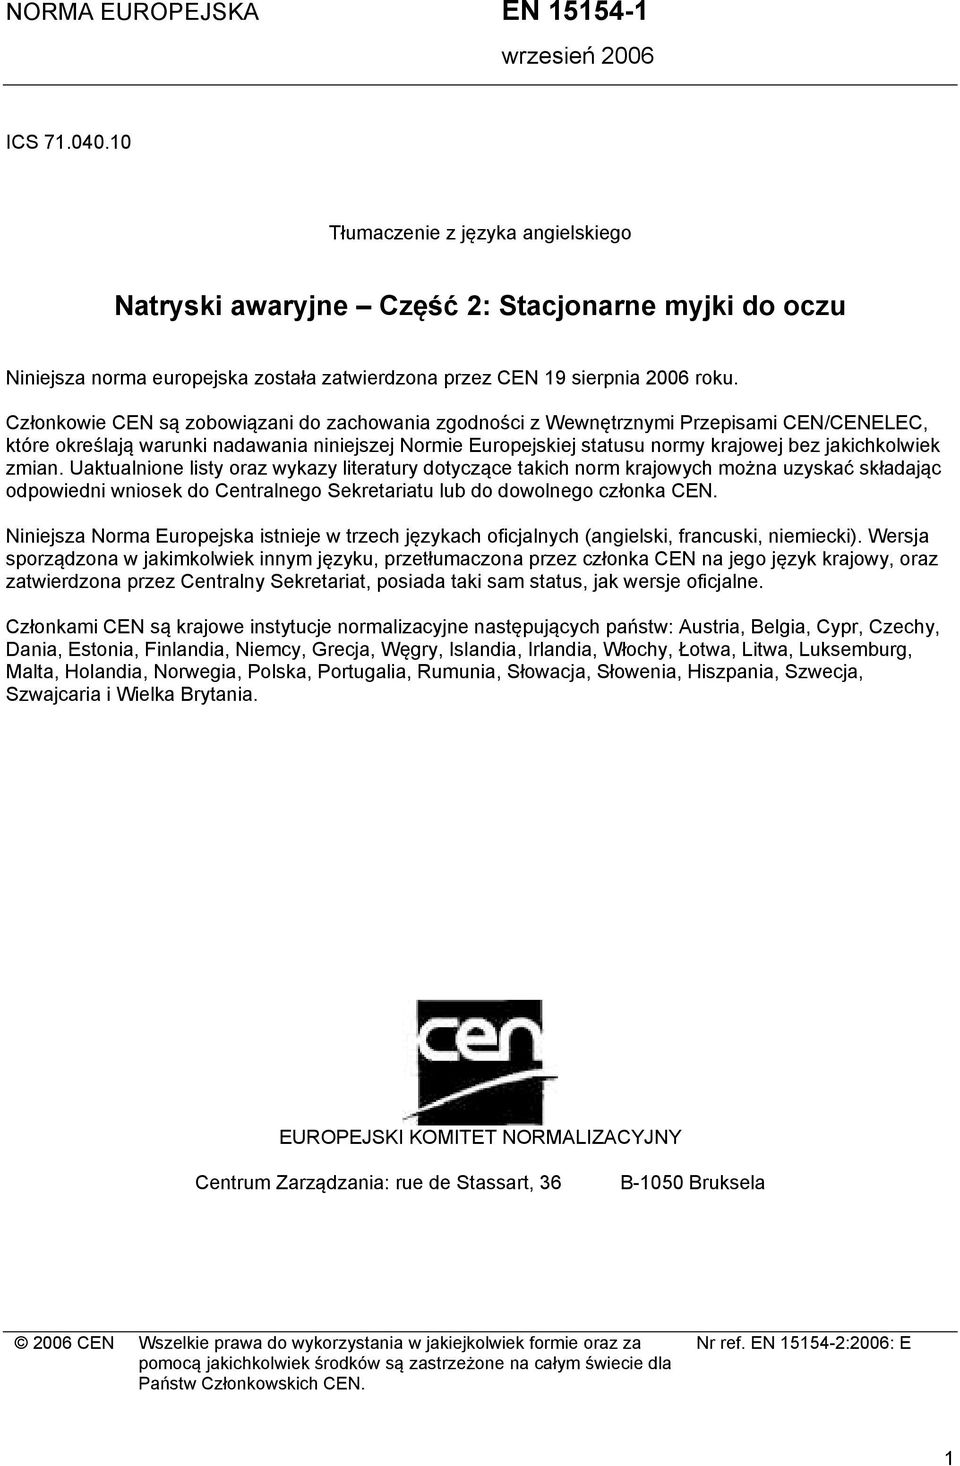 Członkowie CEN są zobowiązani do zachowania zgodności z Wewnętrznymi Przepisami CEN/CENELEC, które określają warunki nadawania niniejszej Normie Europejskiej statusu normy krajowej bez jakichkolwiek